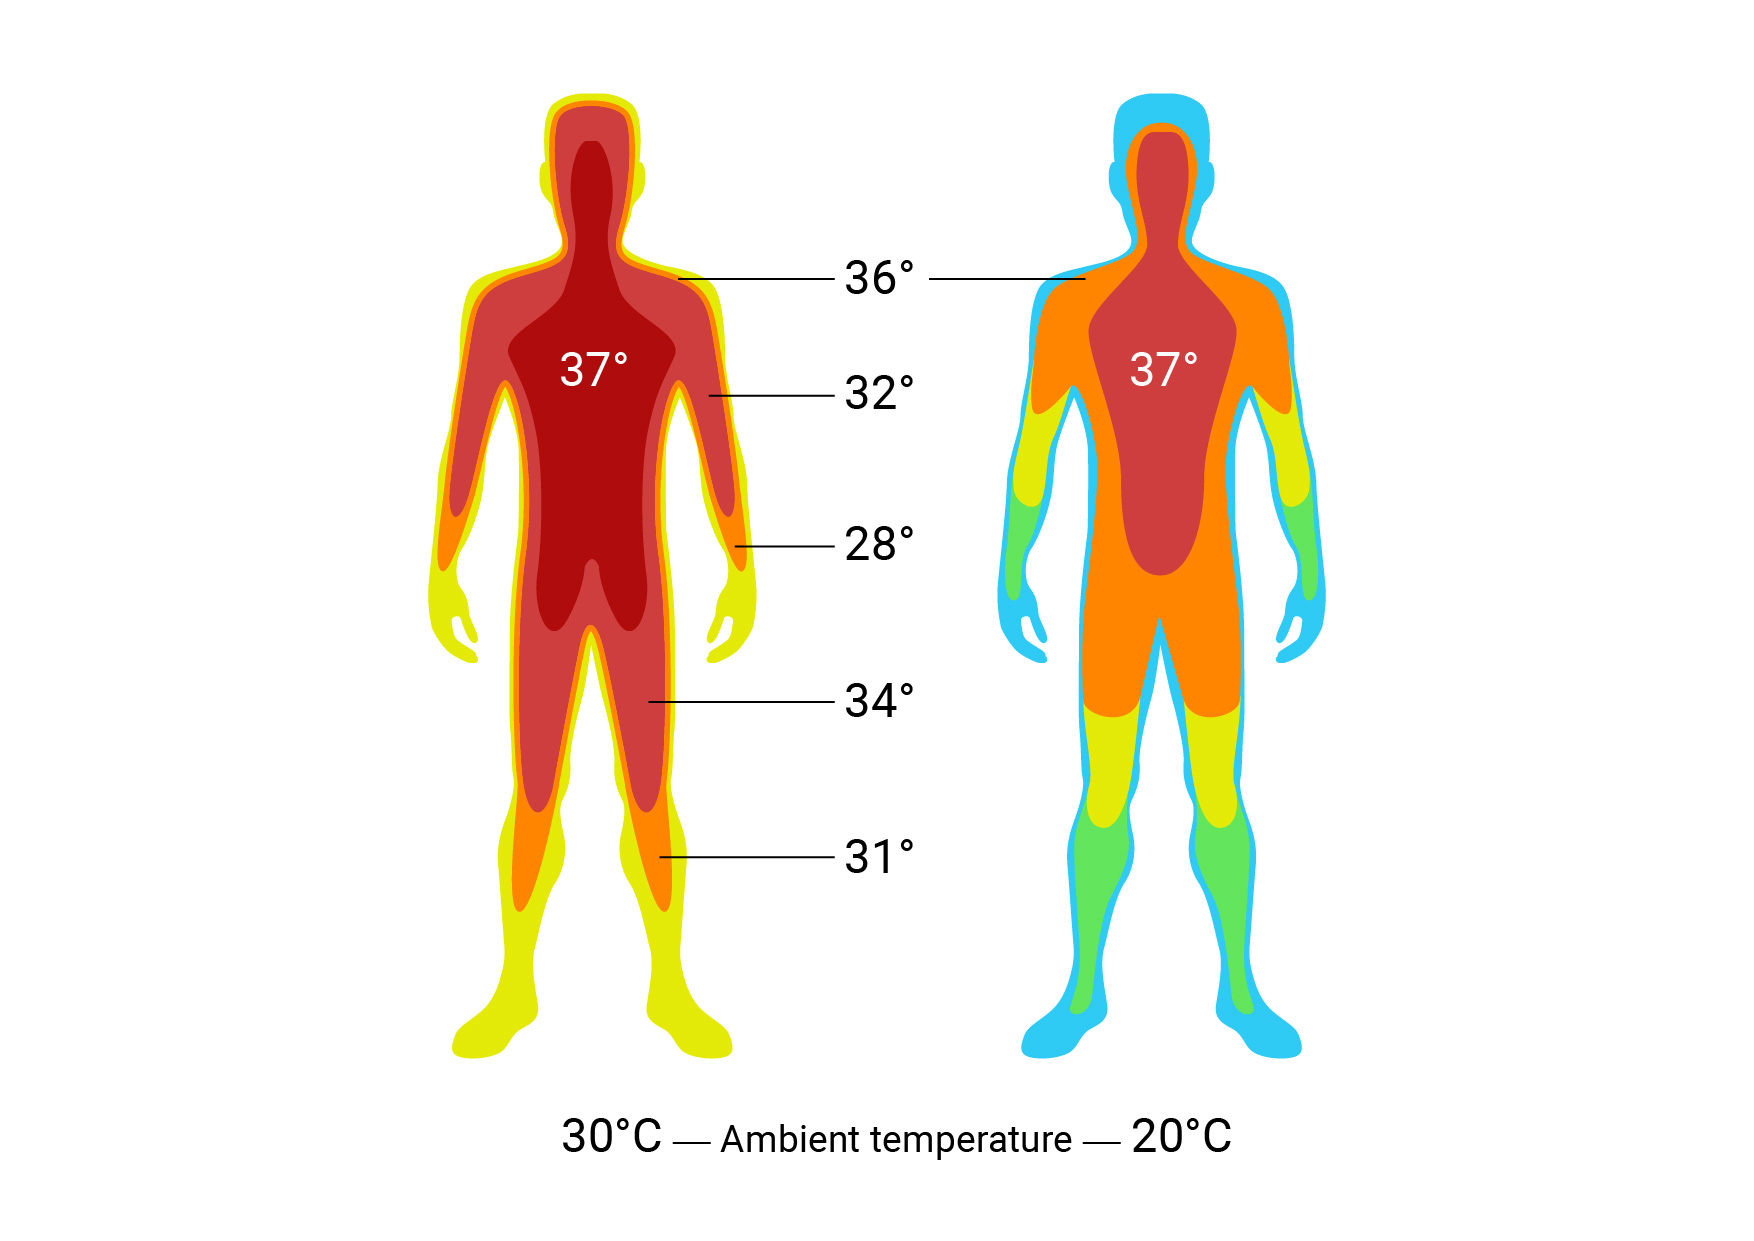 Vergleichsgrafik der Temperatur des Körperkerns und der Körperschale unter dem Einfluss der Umgebungstemperatur